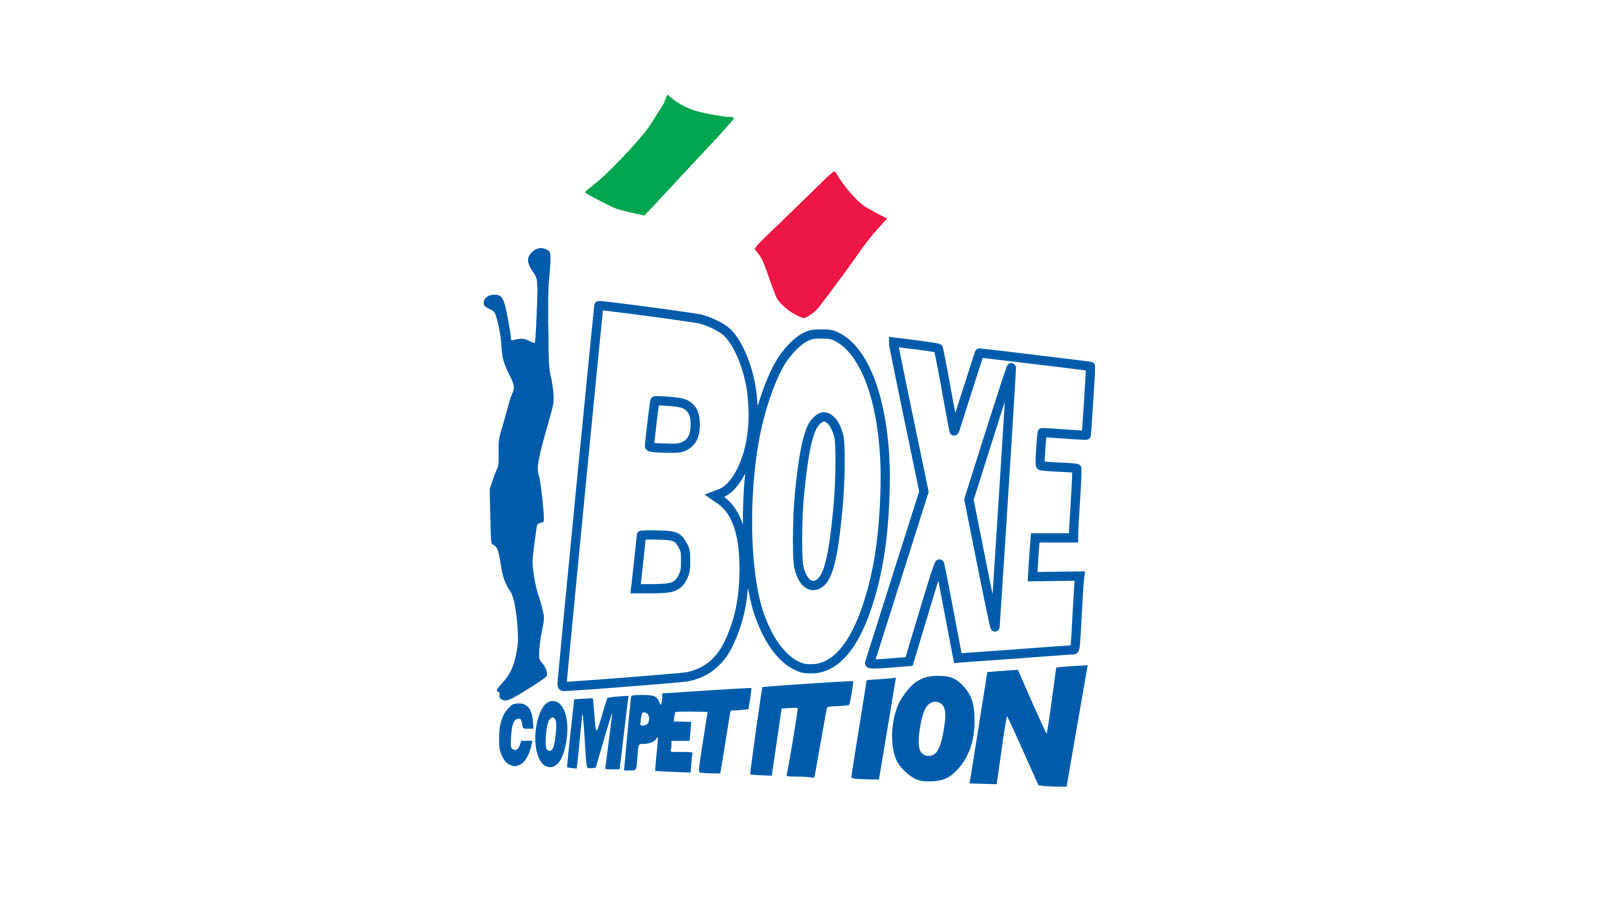 Il 25 Aprile a Roma Torneo di Boxe Competition - Info e Dettagli per Iscrizione